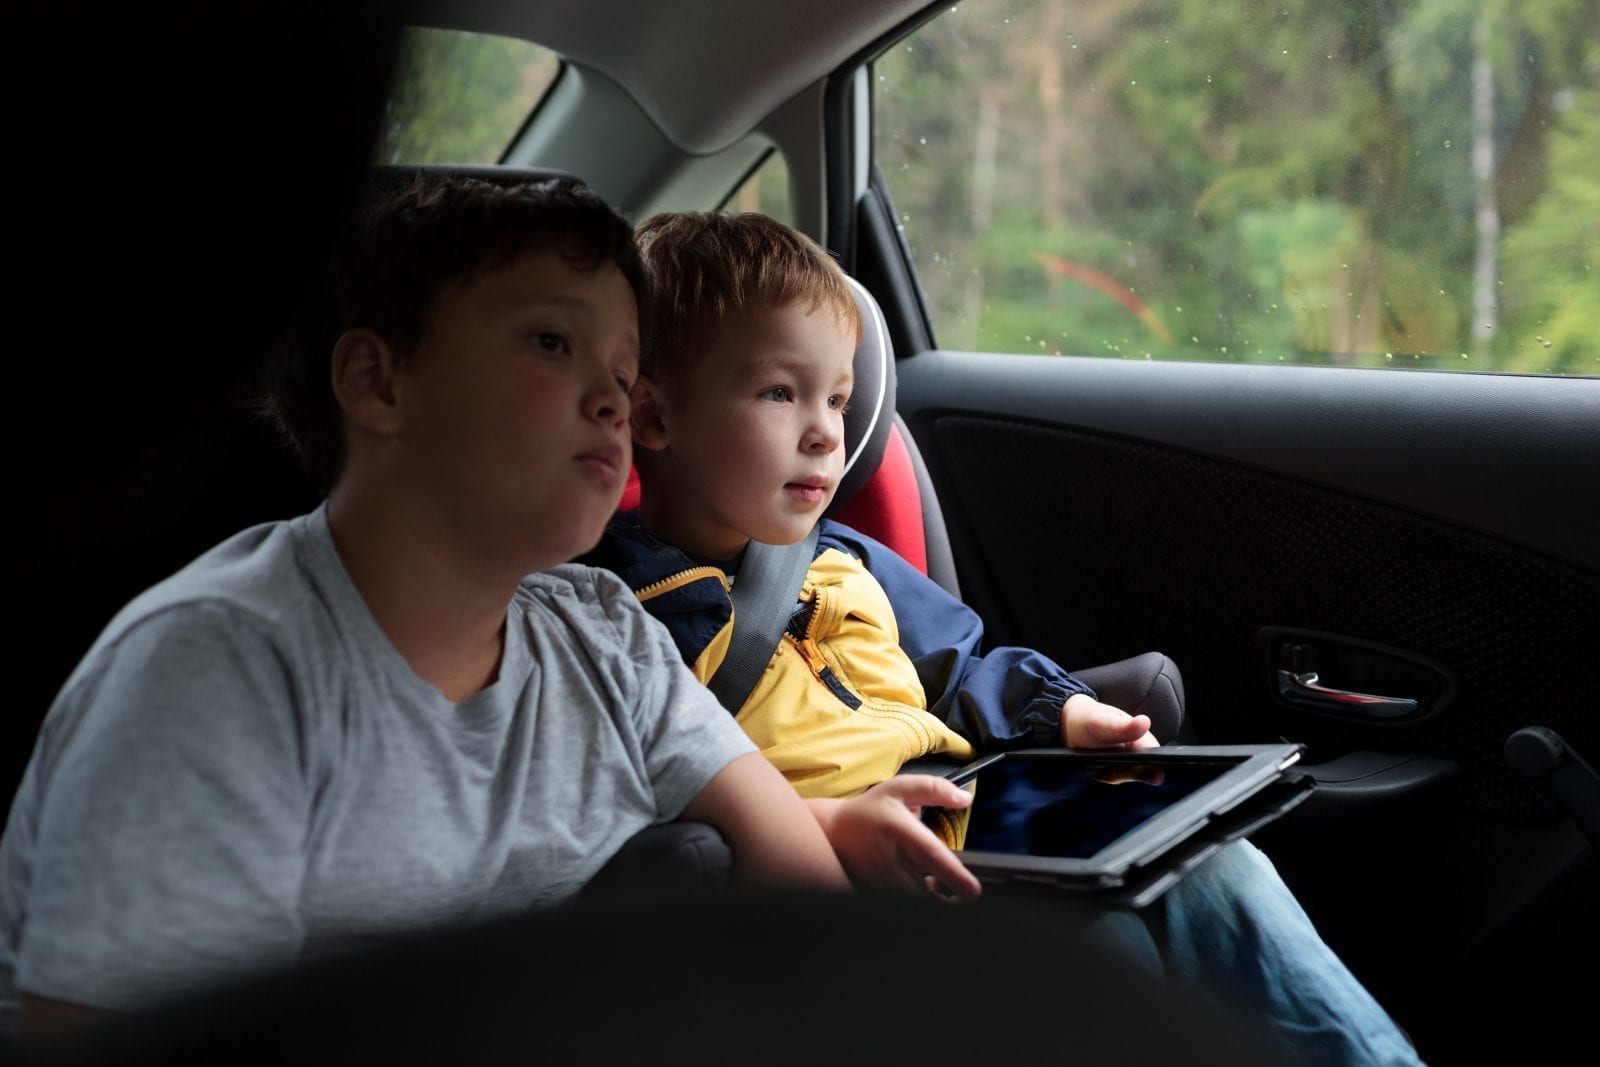 two kids in car on ipad